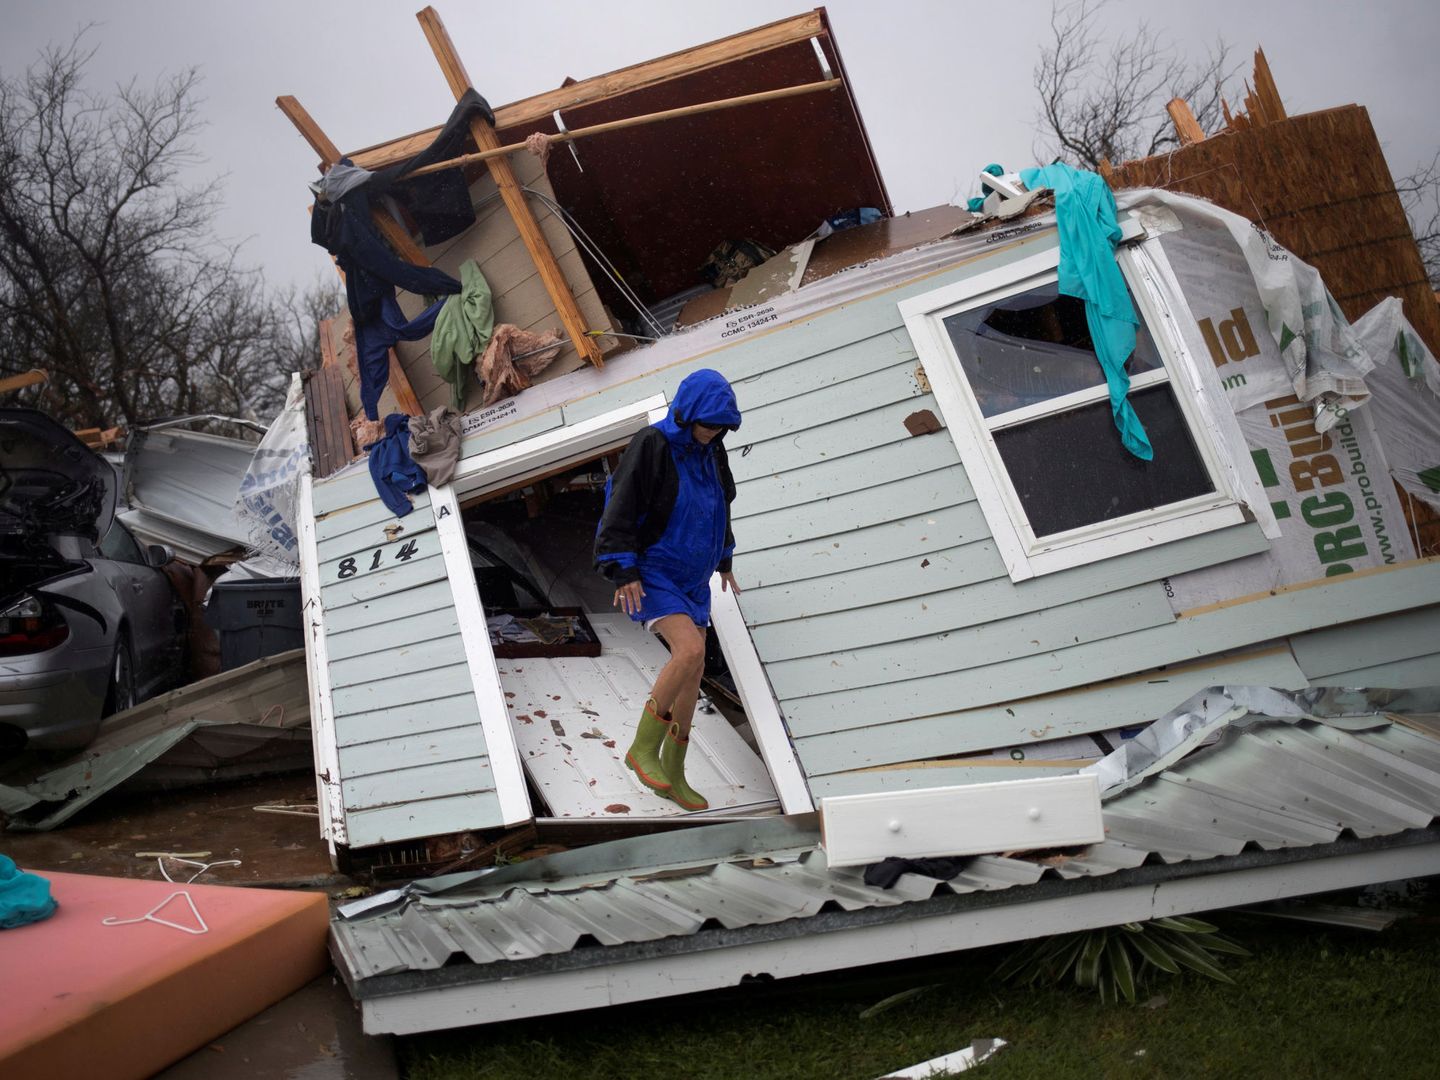 Barbara Koster camina sobre la puerta de entrada de su casa, devastada tras el paso del huracán Harvey. (Reuters)